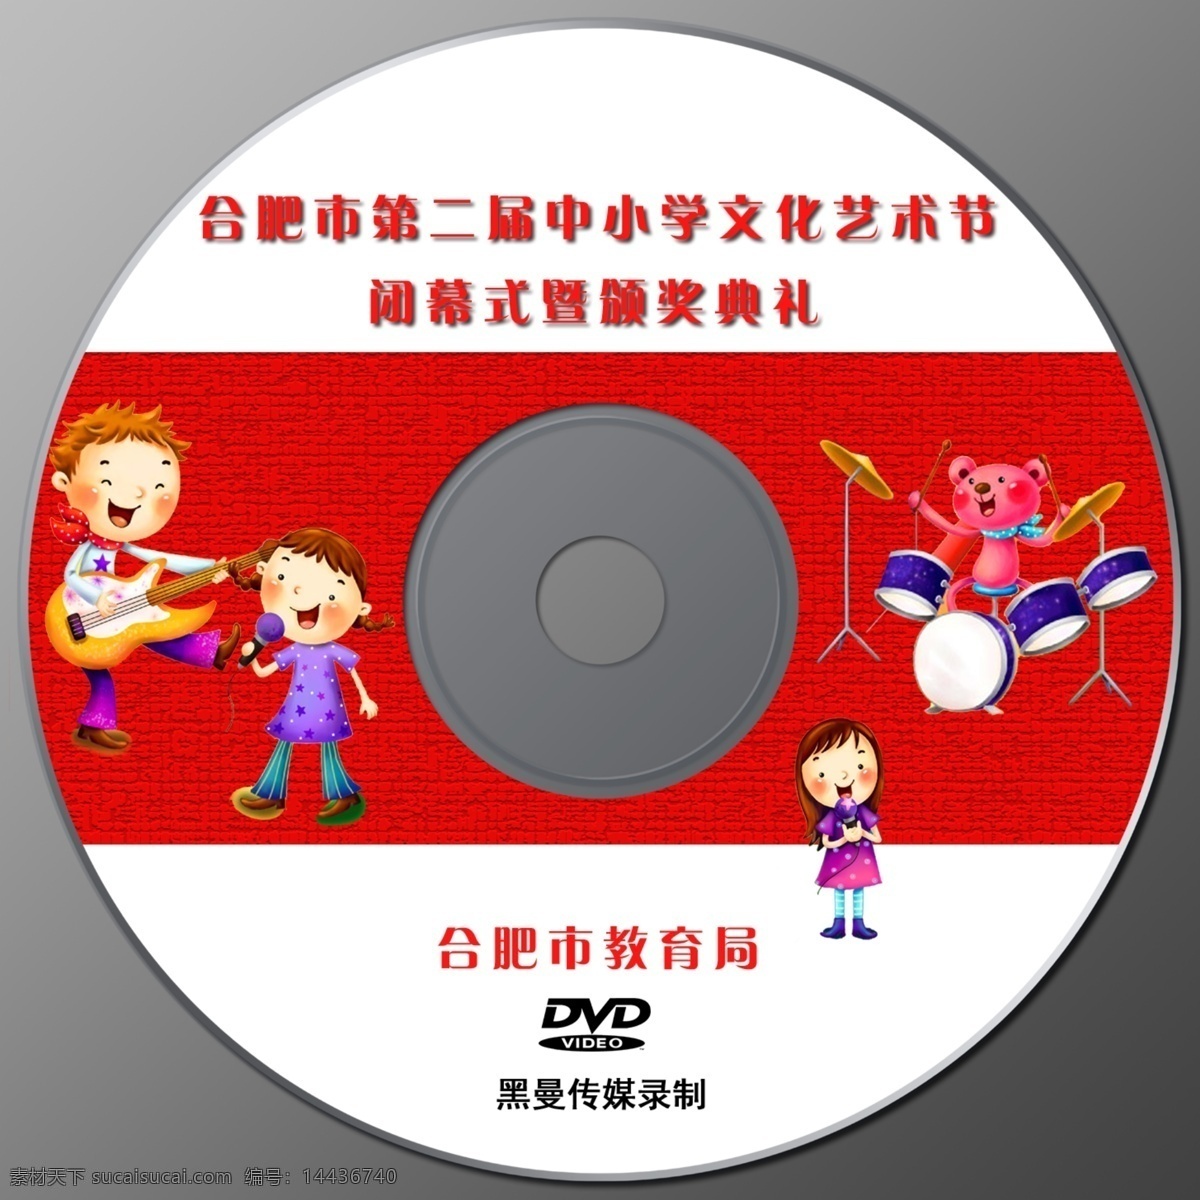 光碟封面 光碟 封面设计 dvd 封面 白色